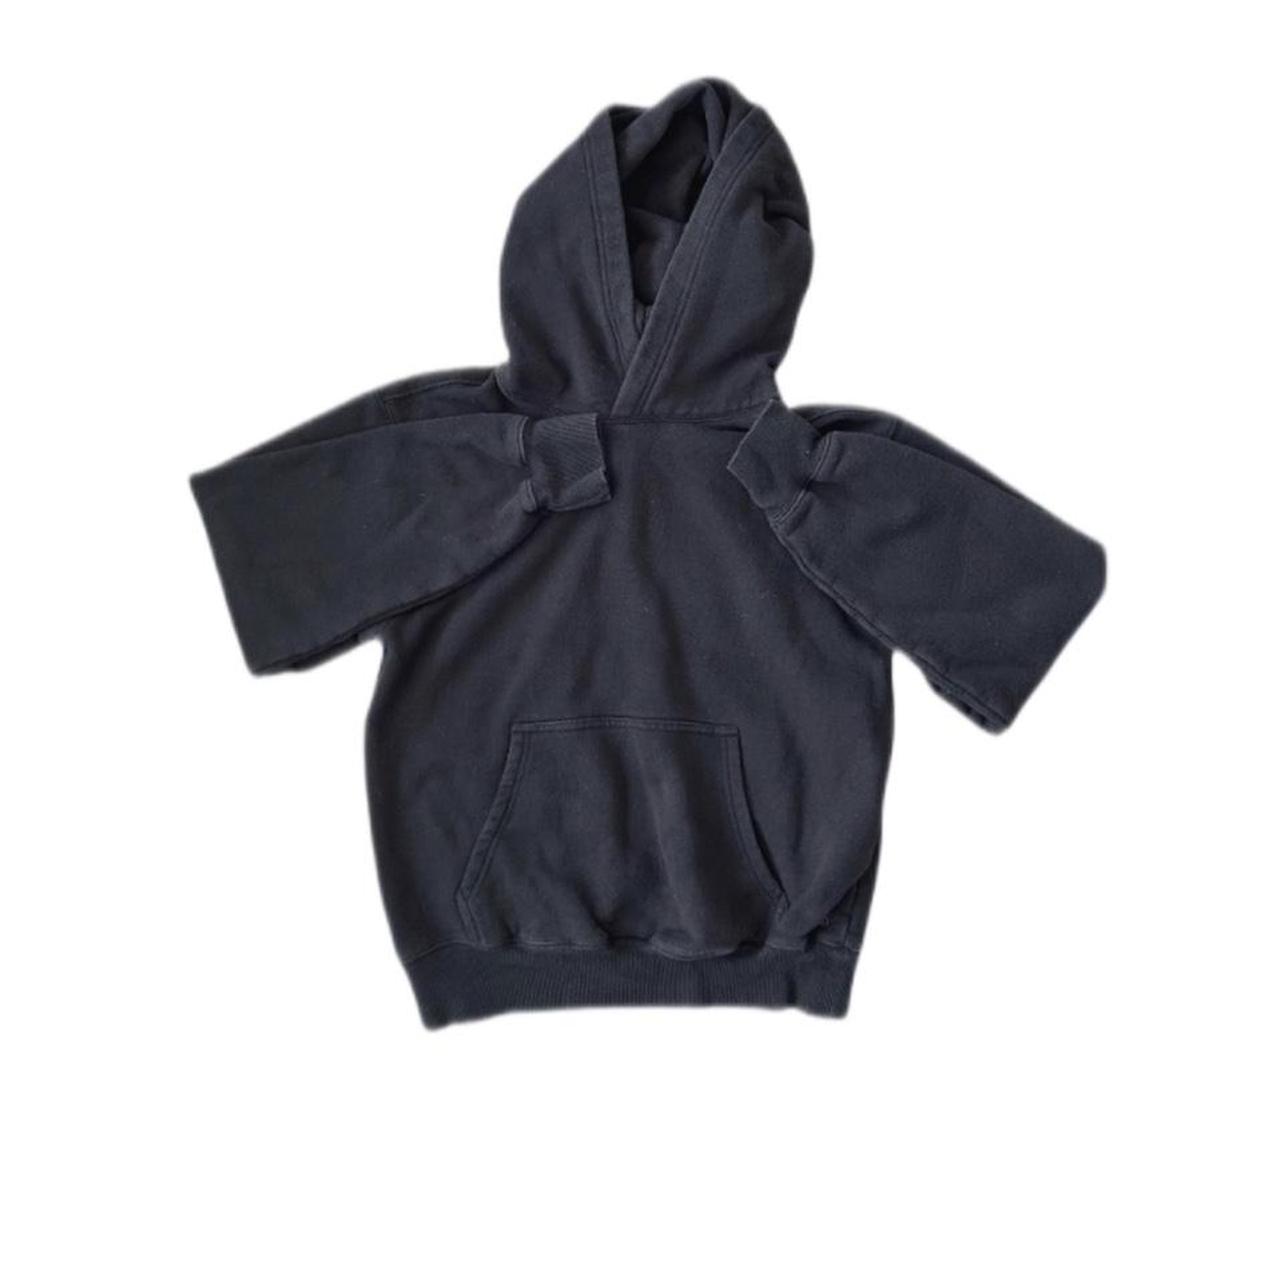 Aritzia cozy fleece hoodie in black SIZE S • never... - Depop